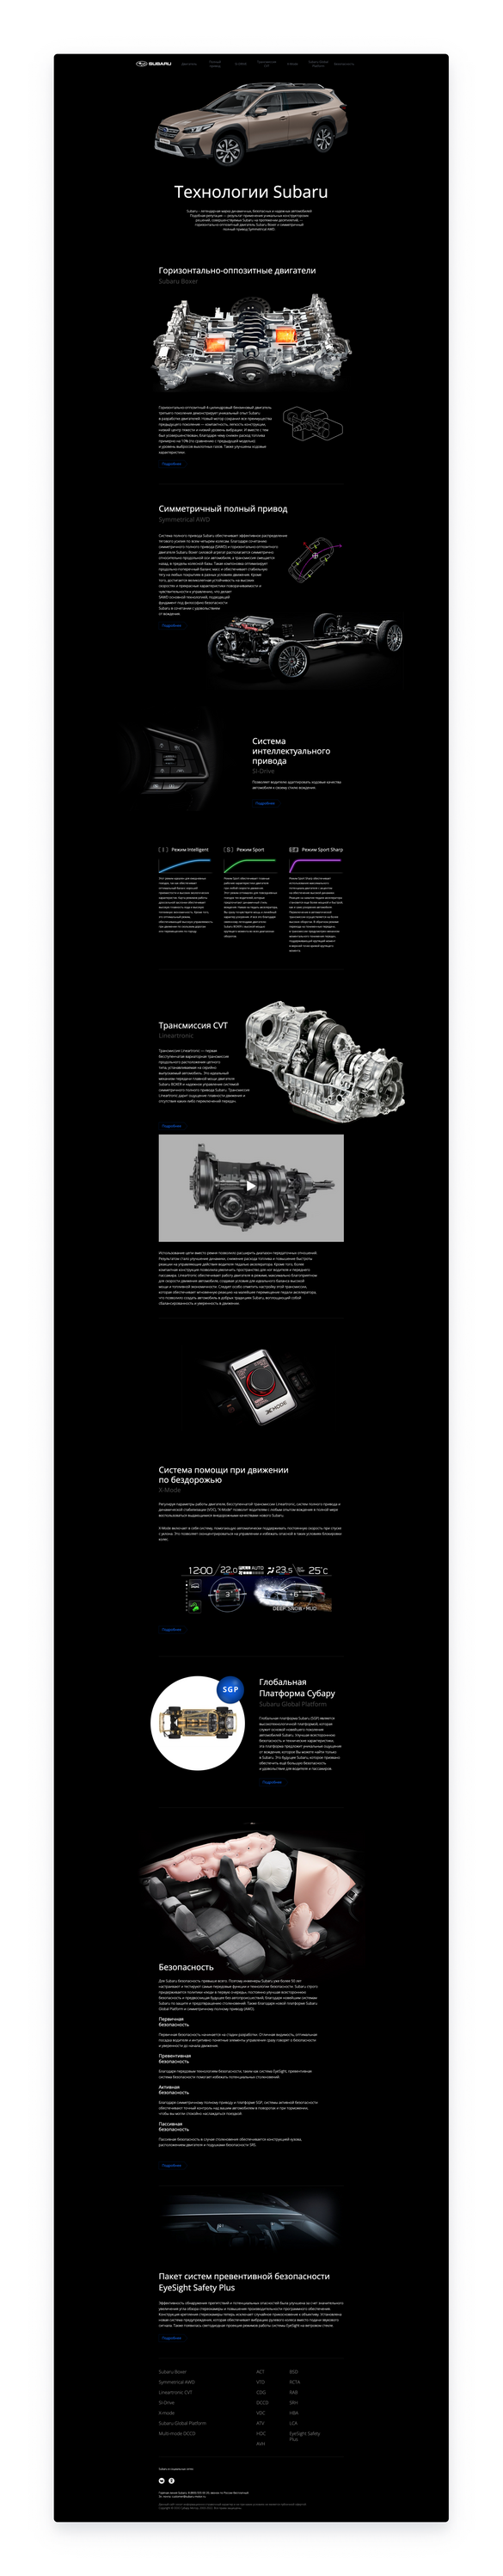 Сайт «Subaru Технологии»